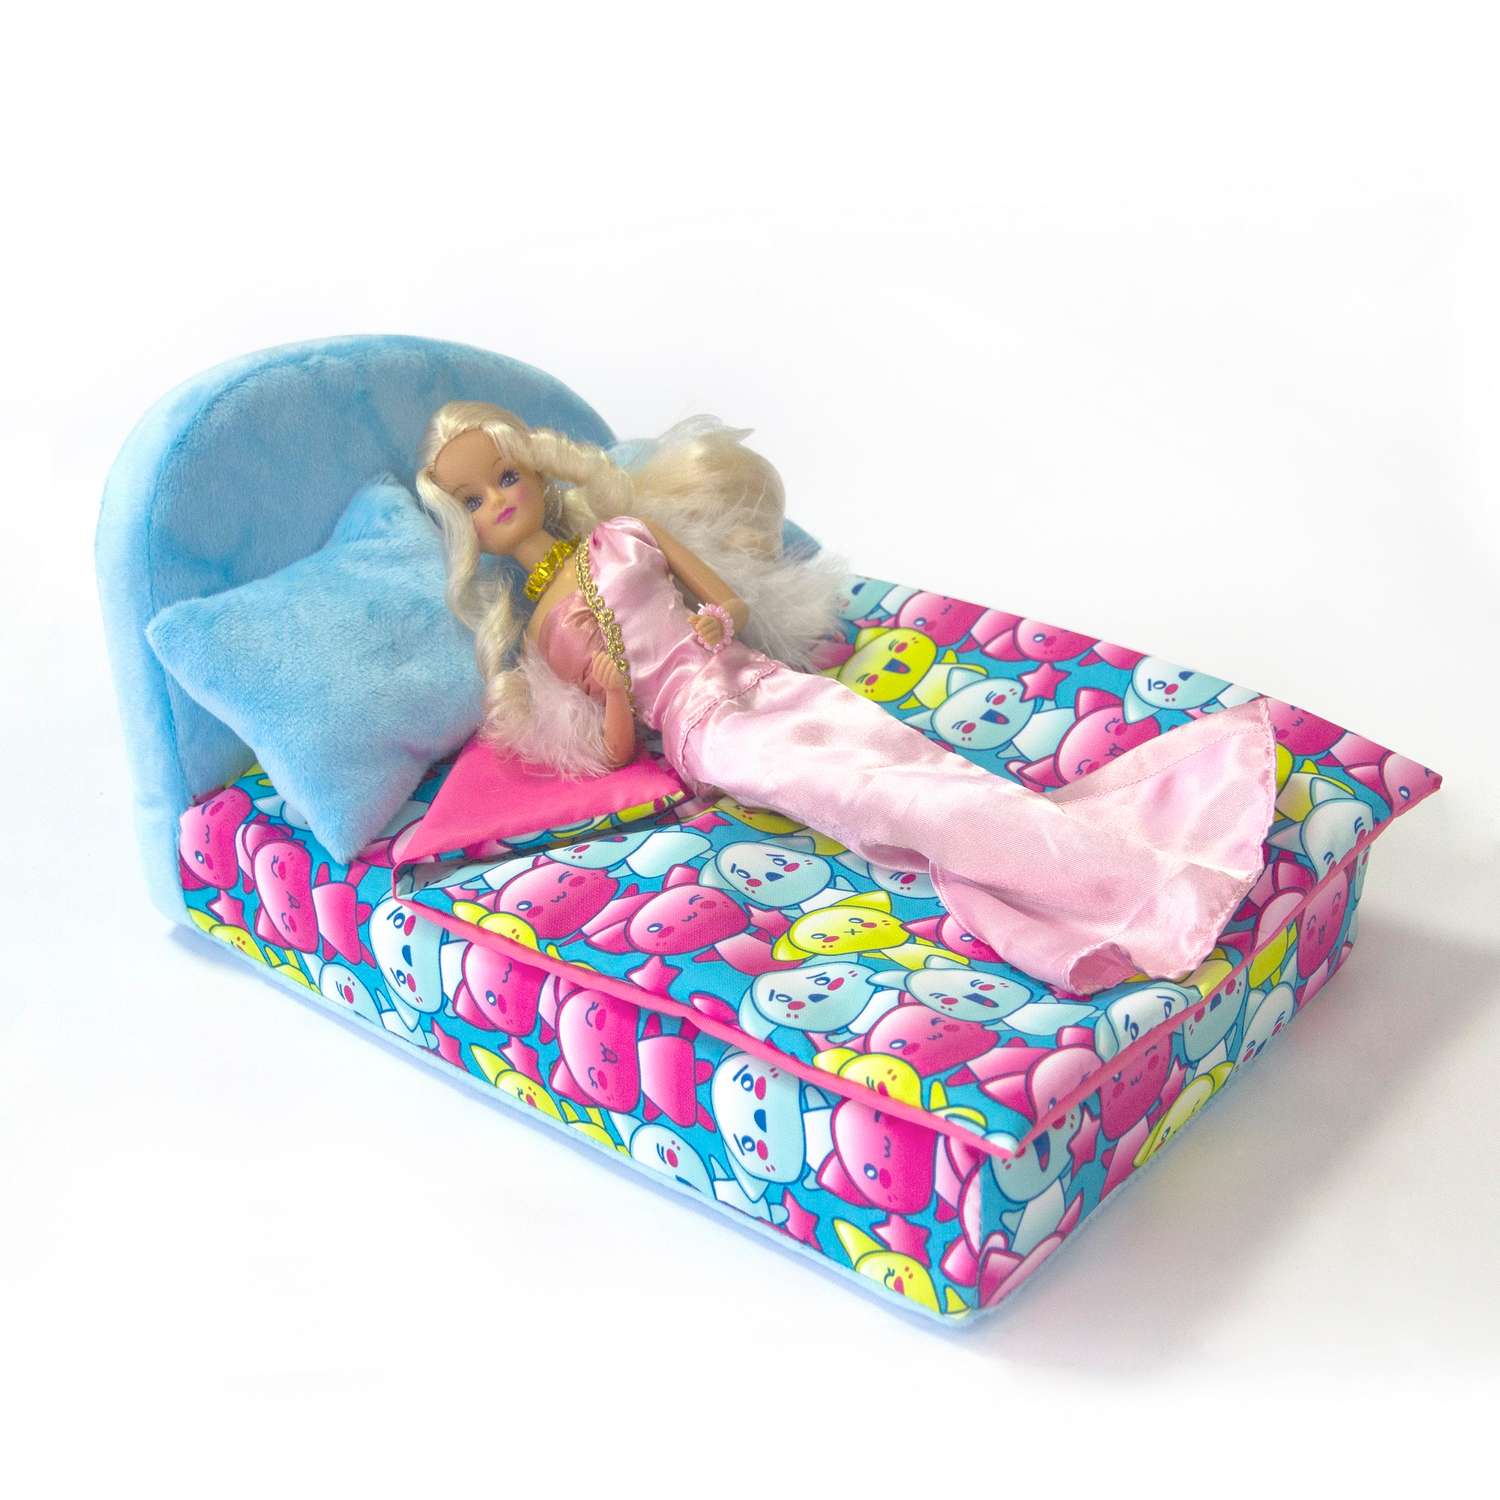 Набор мебели для кукол Belon familia Принт хор котят бирюзовый кровать круглая 2 подушки НМ-003-32 - фото 3